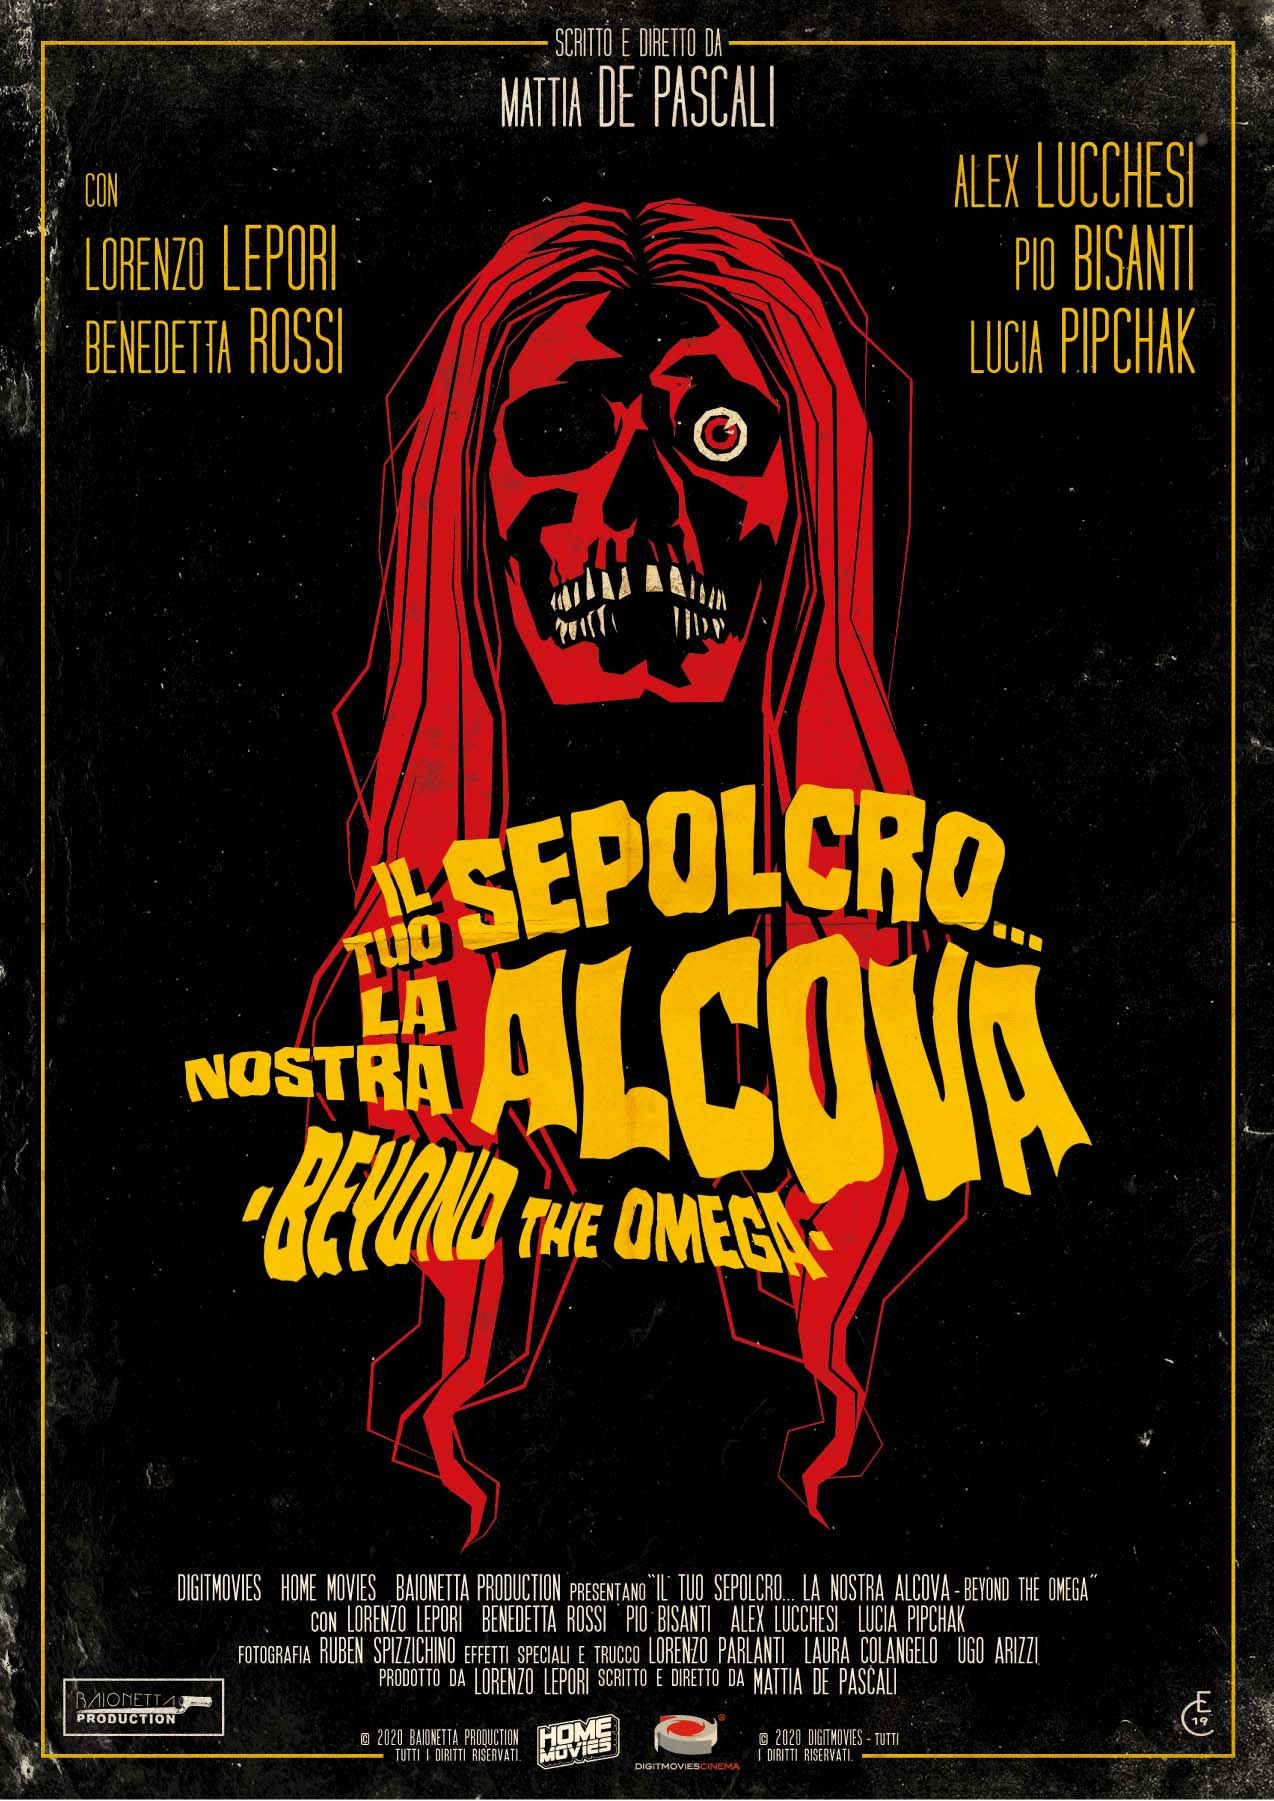 Il Tuo Sepolcro... La Nostra Alcova - Beyond The Omega (DVD)